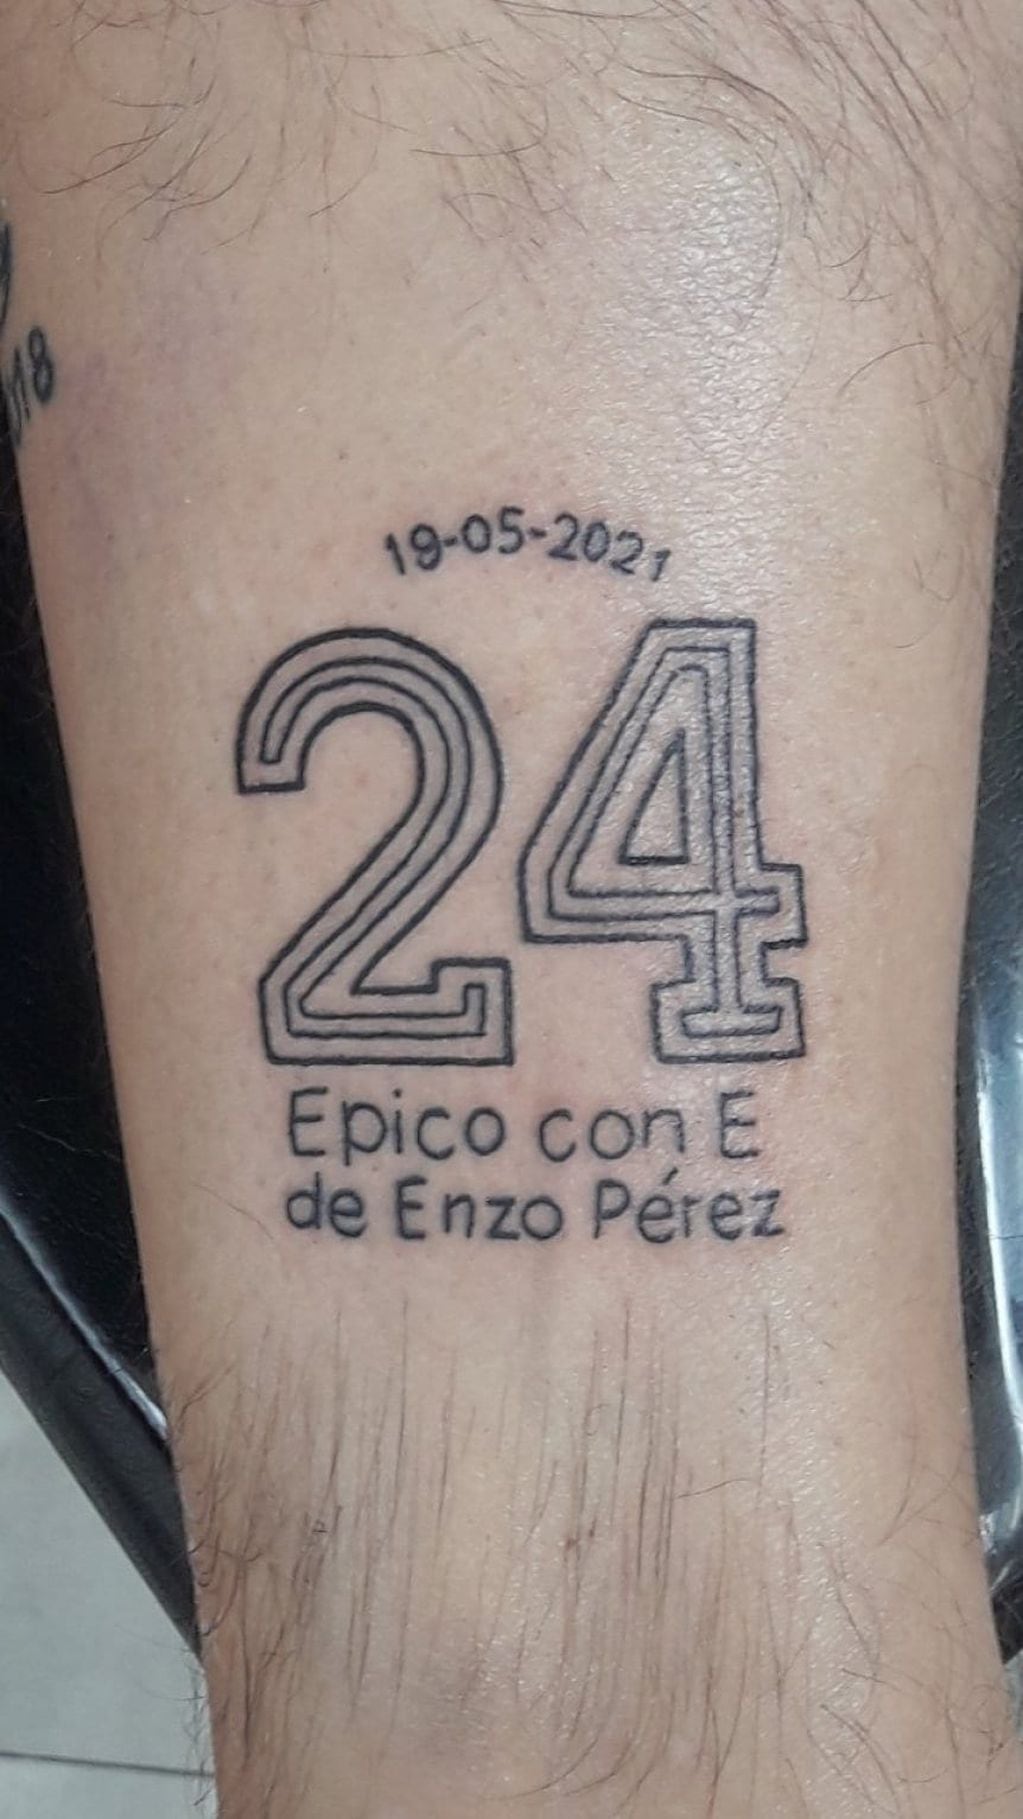 El 24 de Enzo en la piel.